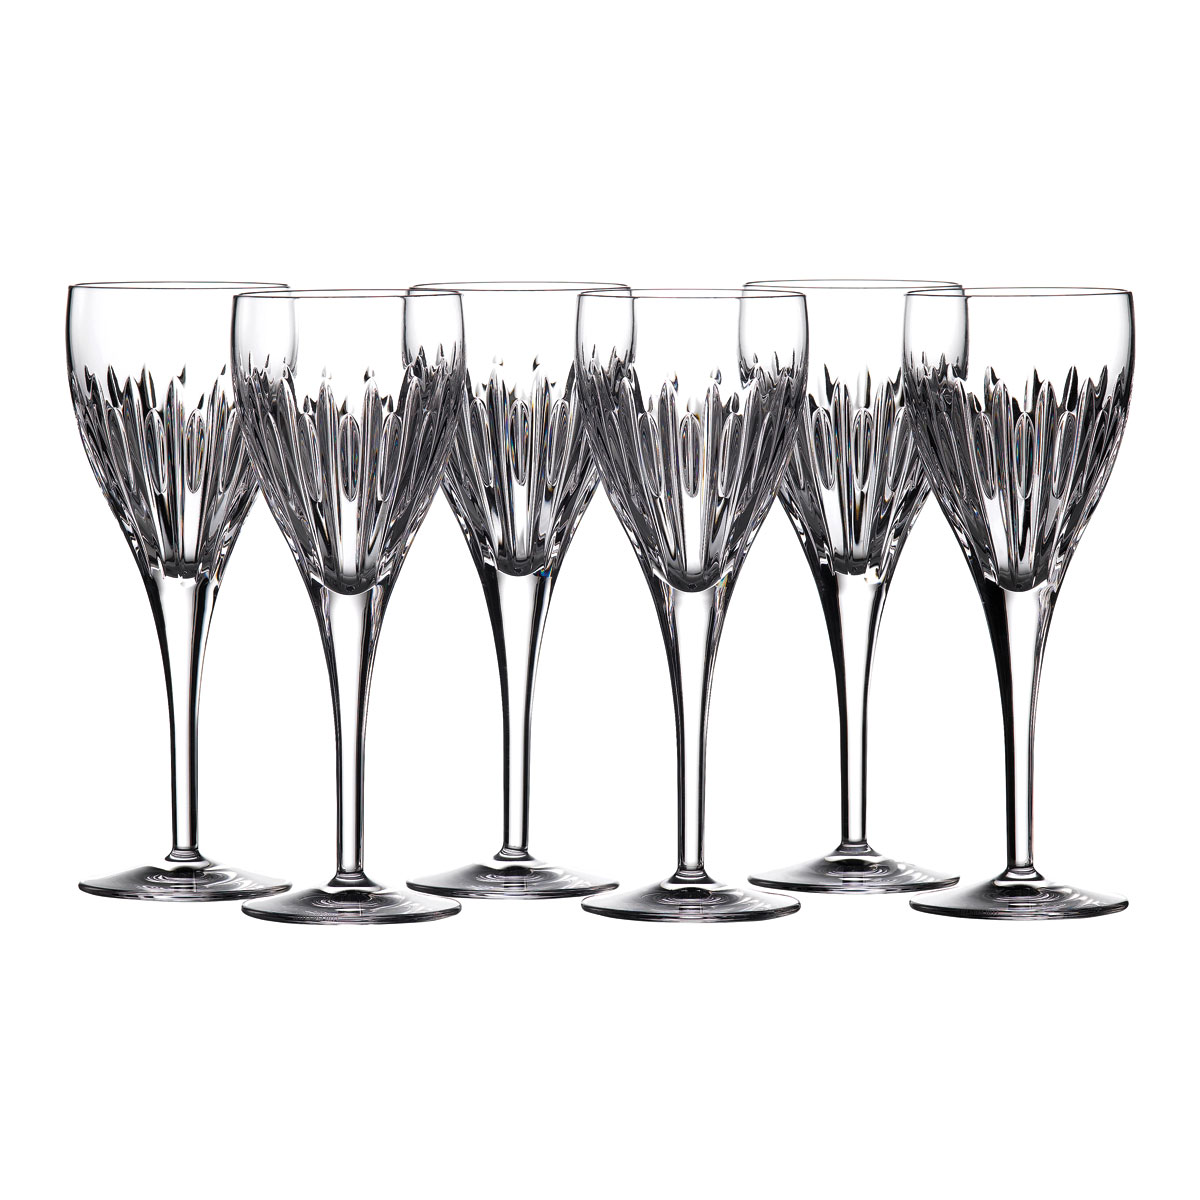 Waterford Crystal Ardan Mara Wine Glasses, Set of 6